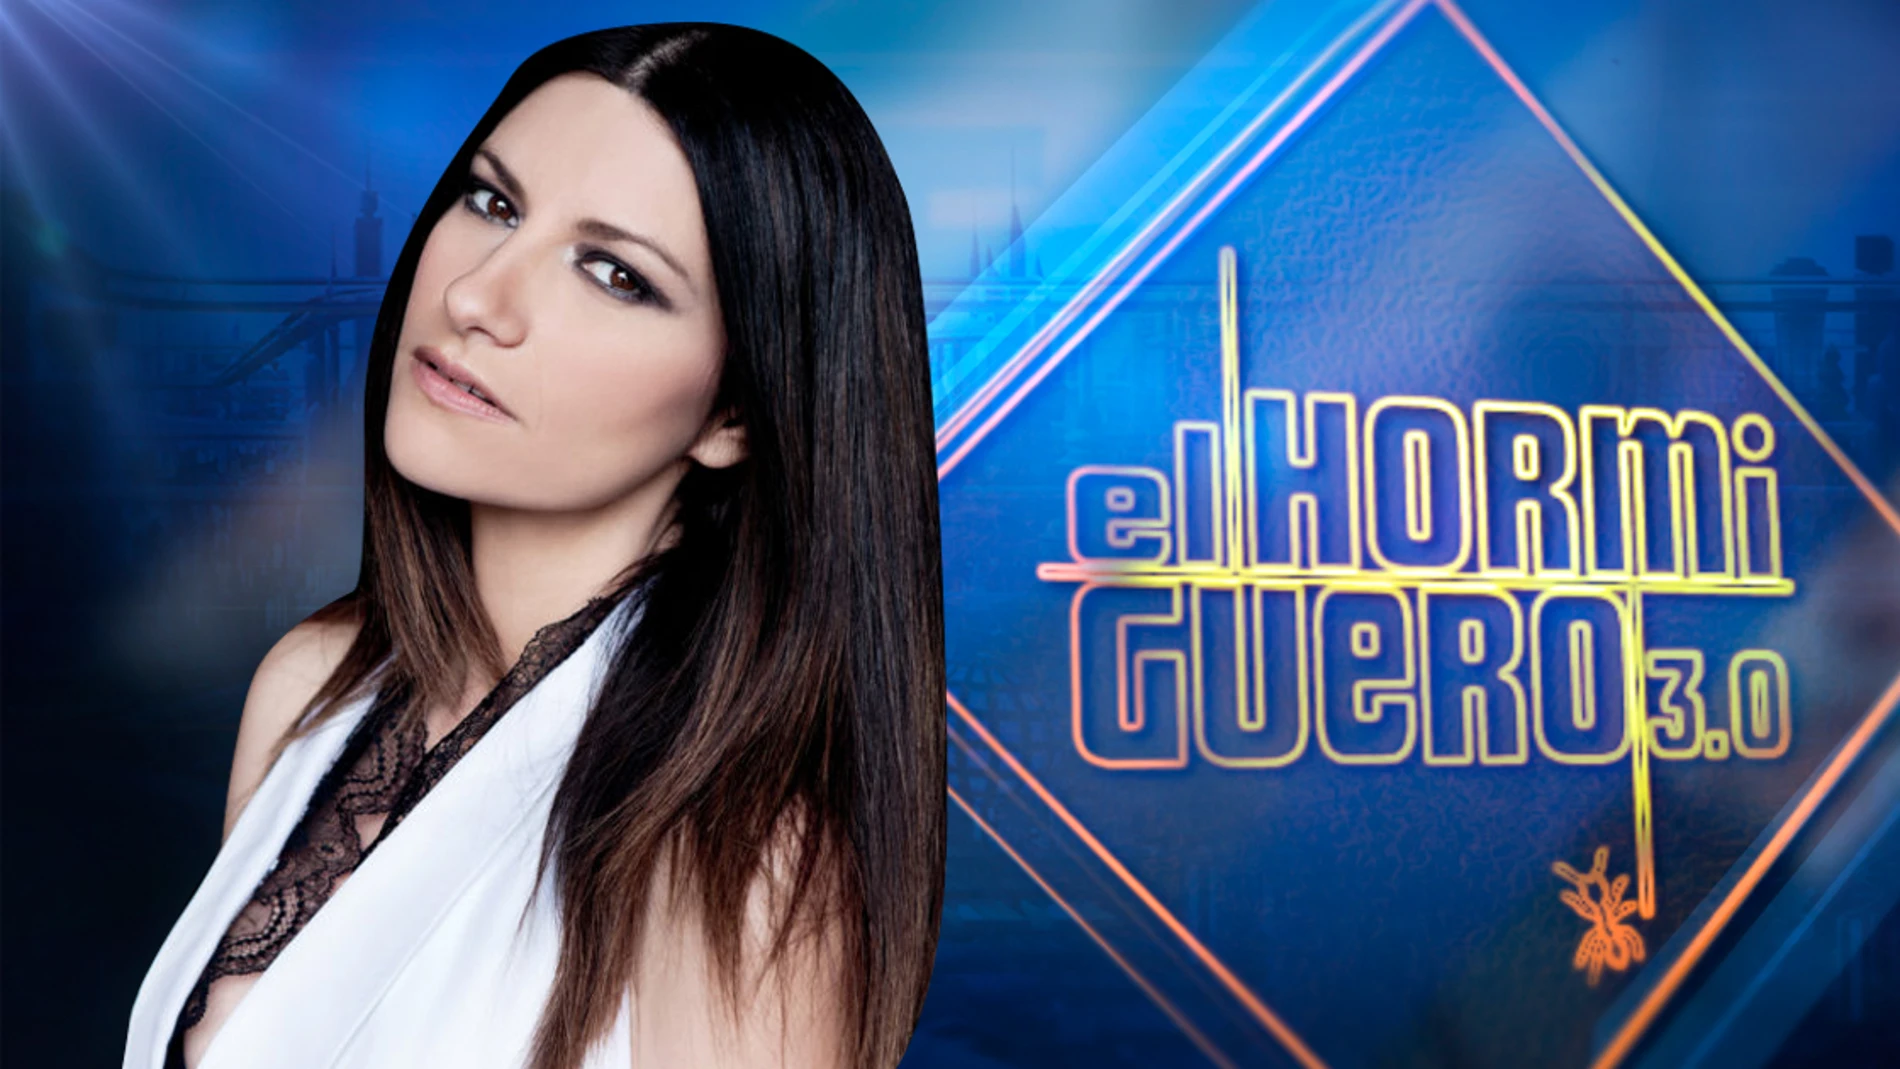 Laura Pausini llenará 'El Hormiguero 3.0' de amor el próximo jueves